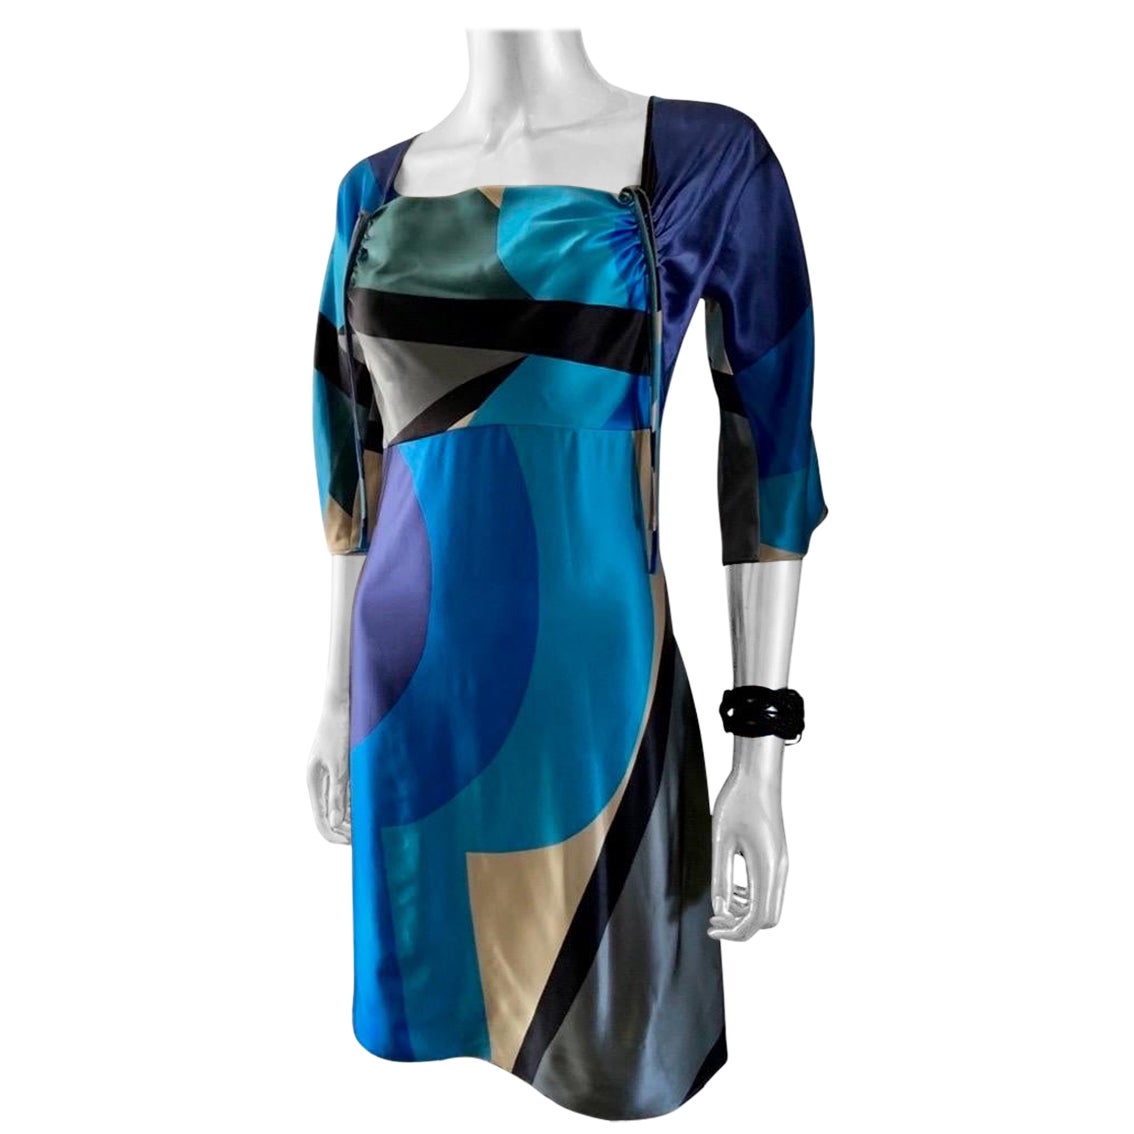 Une robe très difficile à trouver de la légendaire créatrice d'imprimés Vera Neumann, qui était la reine du foulard en soie la plus populaire au monde dans les années 60 et 70. Cette robe fourreau chic a été réalisée dans un imprimé brillant en